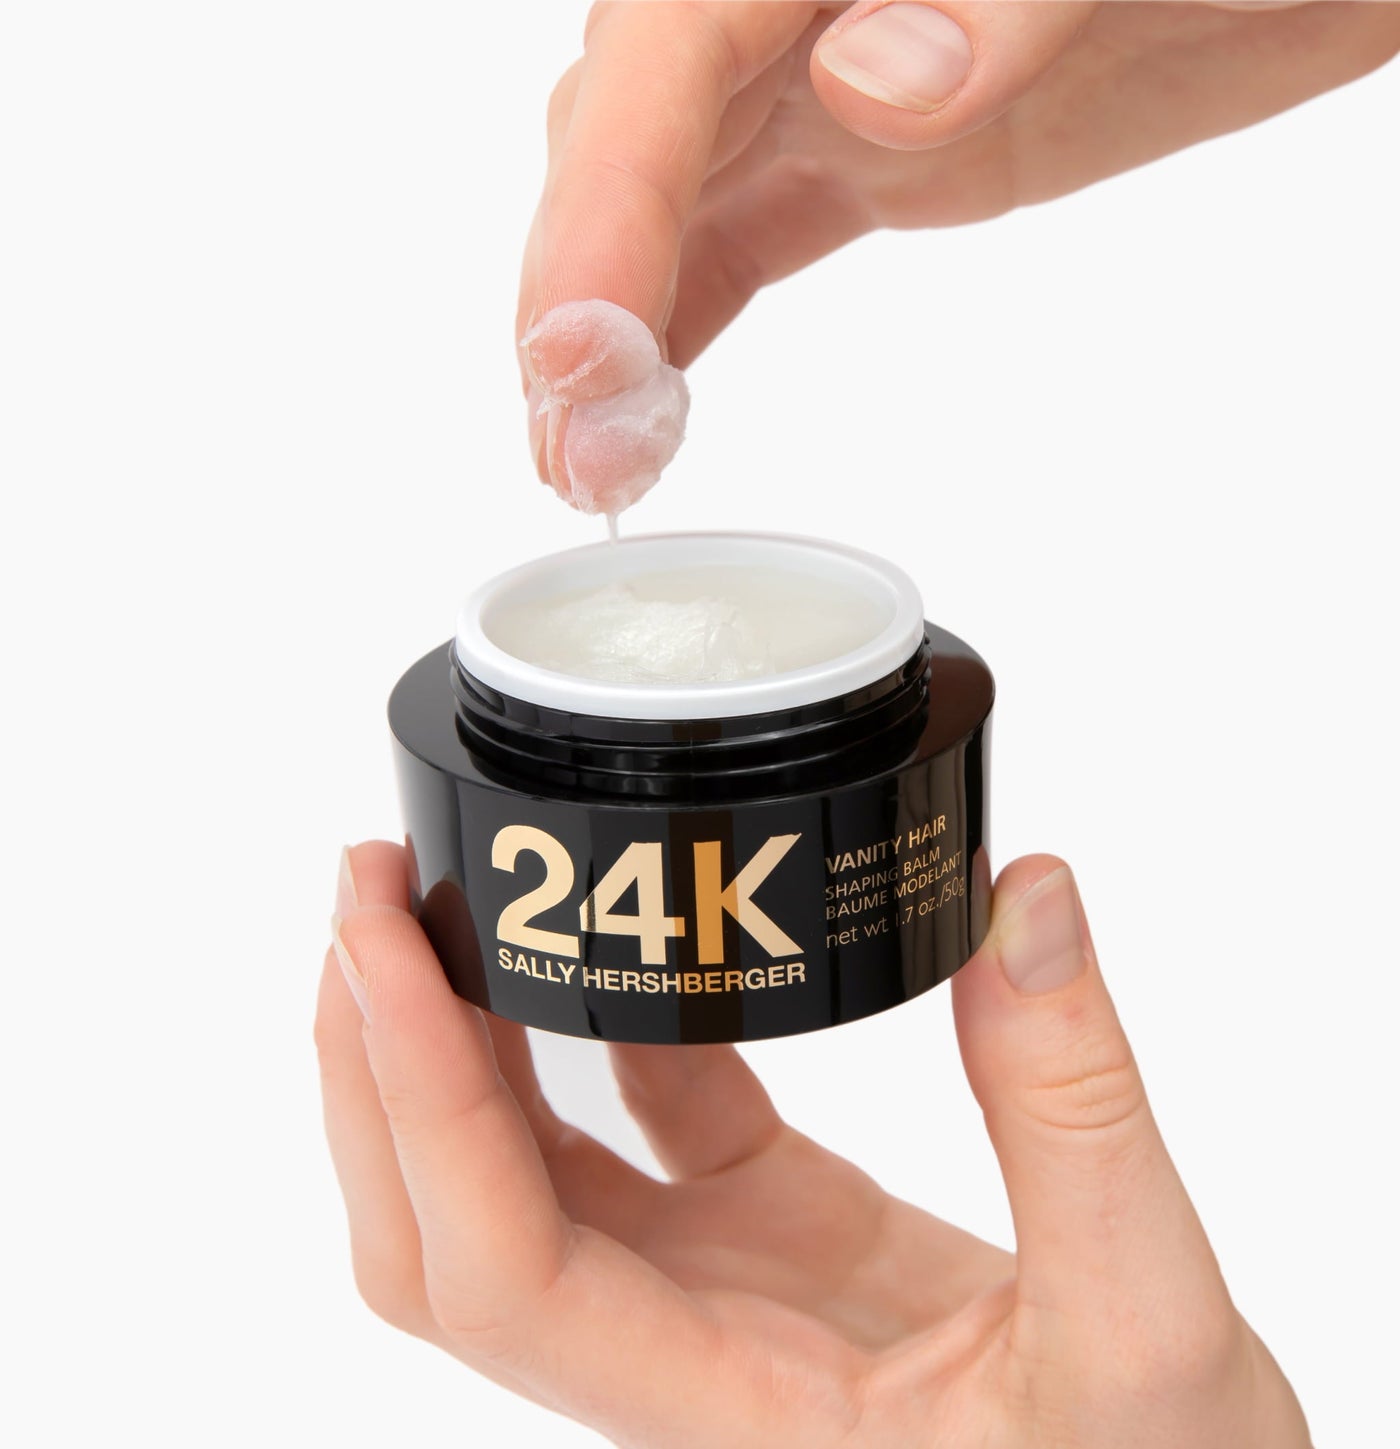 24K Vanity Hair Shaping Balm - Pack of 6